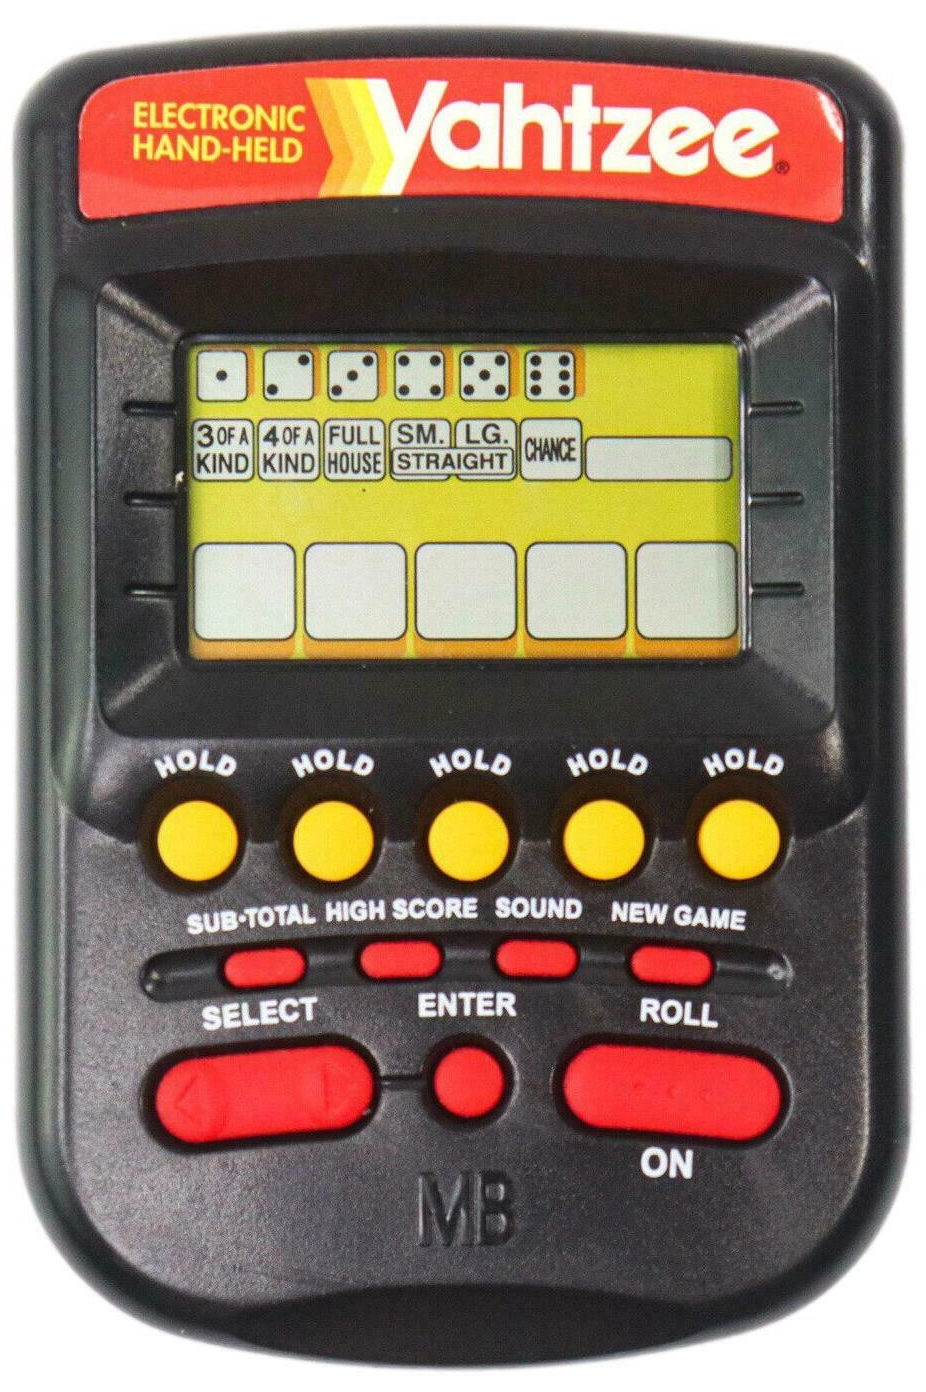 1995 electronic handheld Yahtzee game